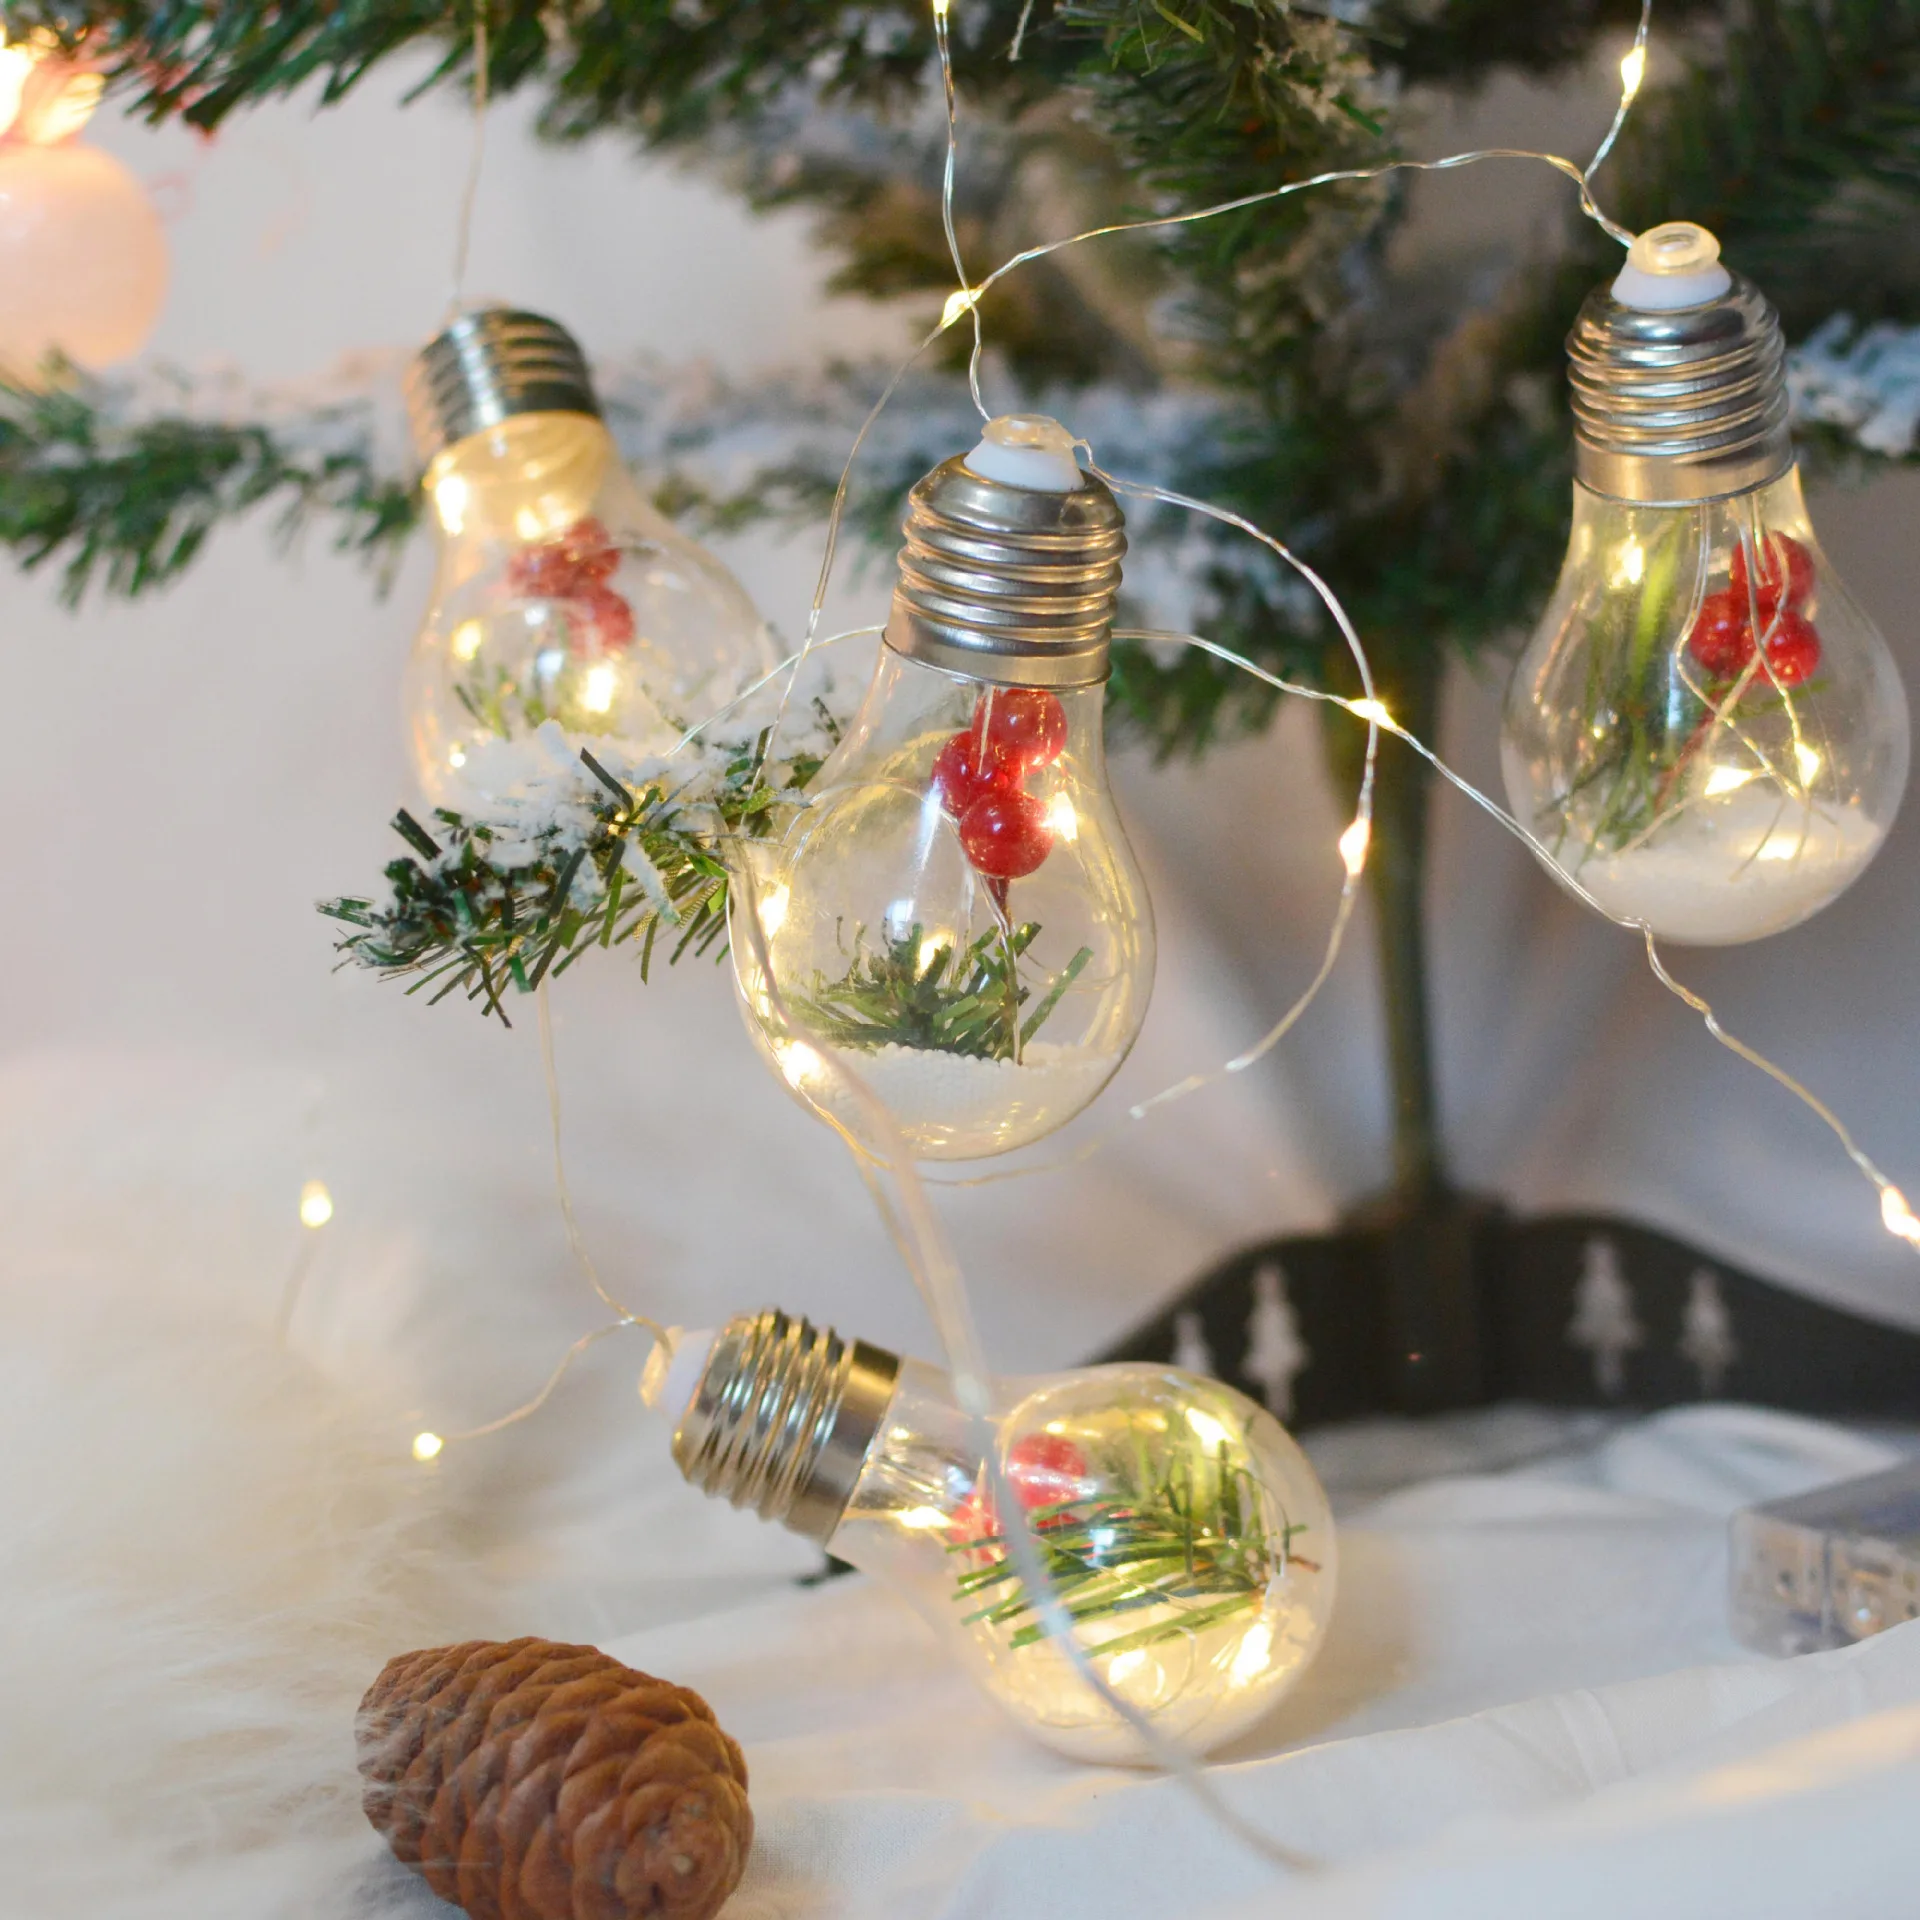 4M светодиодный светильник-гирлянда s Сказочный светильник s Рождественская наружная гирлянда Водонепроницаемая Свадебная вечеринка рождественские лампы праздничный светильник-занавеска - Испускаемый цвет: Christmas string